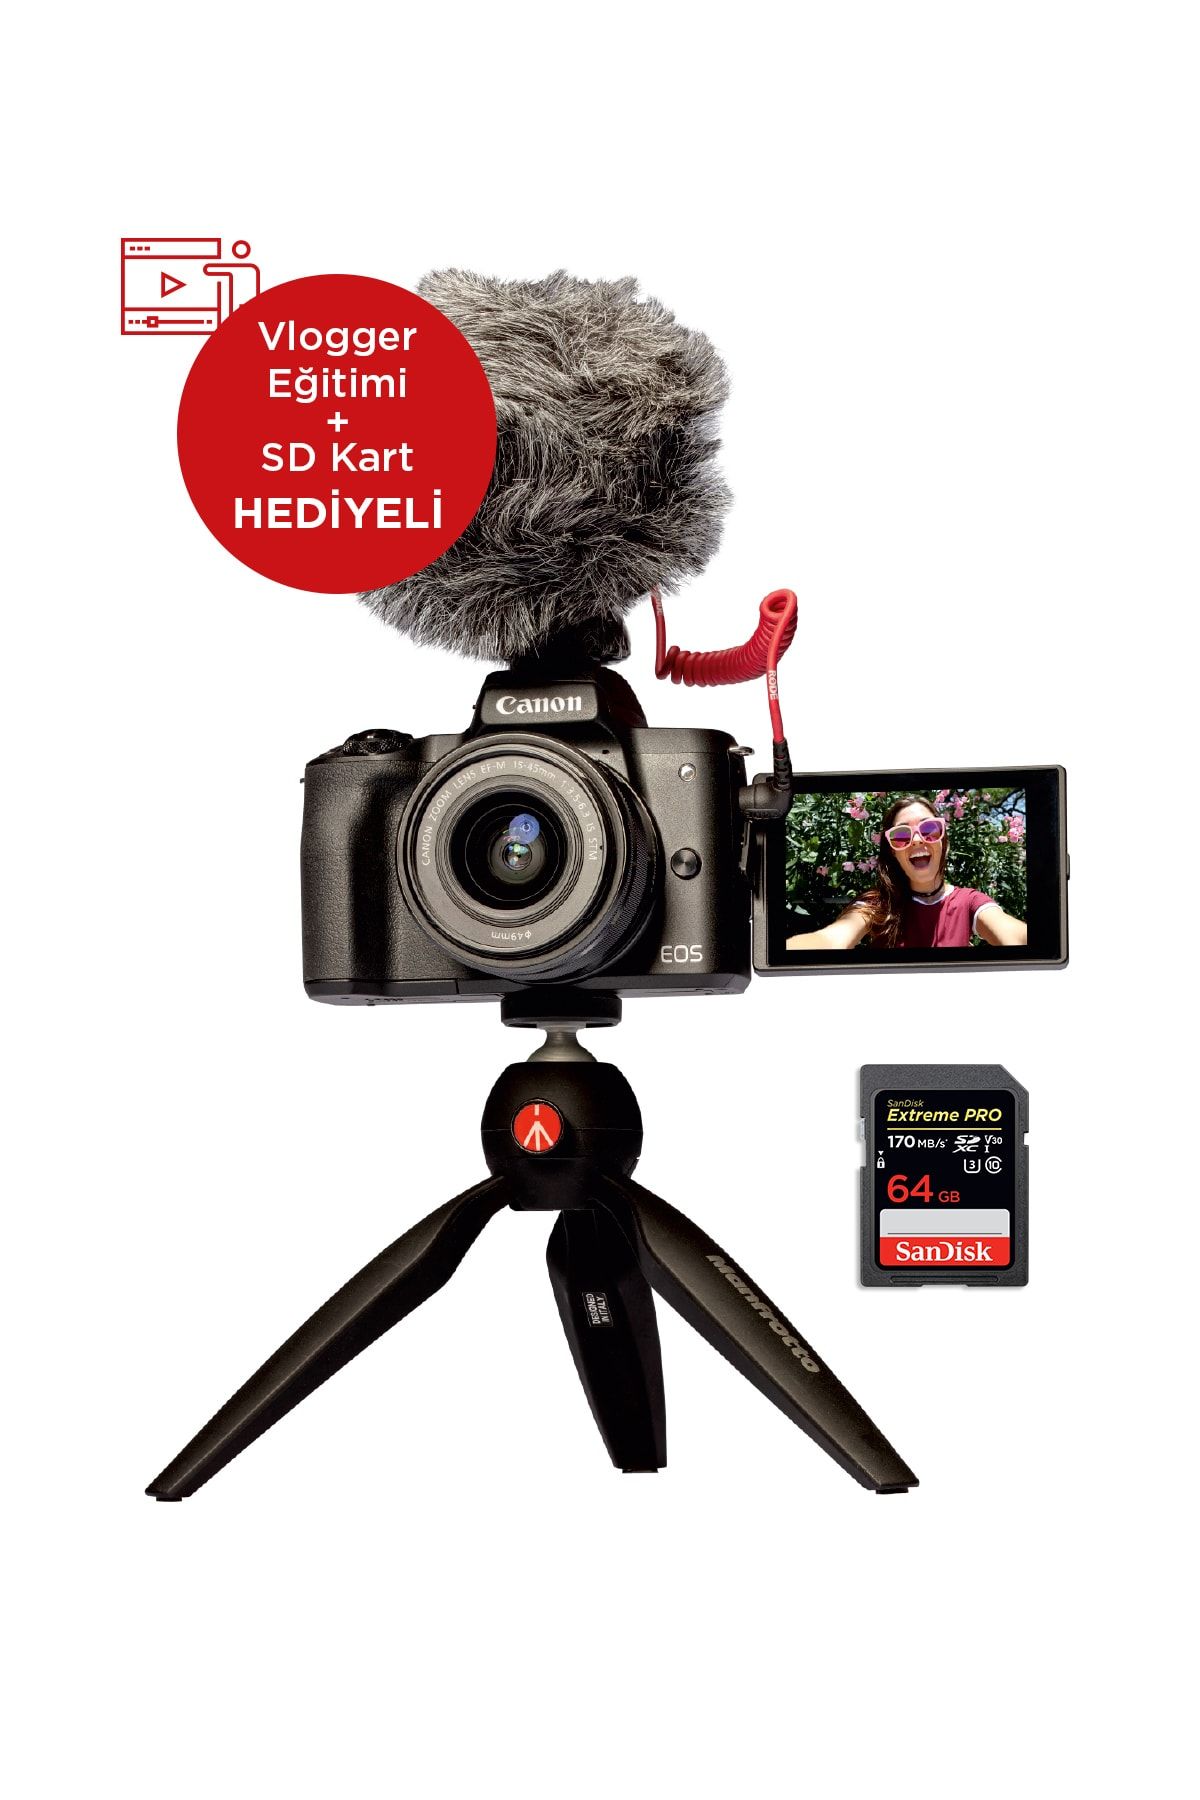 Canon EOS M50 Vlogger Kit Fotoğraf Makinesi (Hediye Seti ile) (Canon Eurasia Garantili)